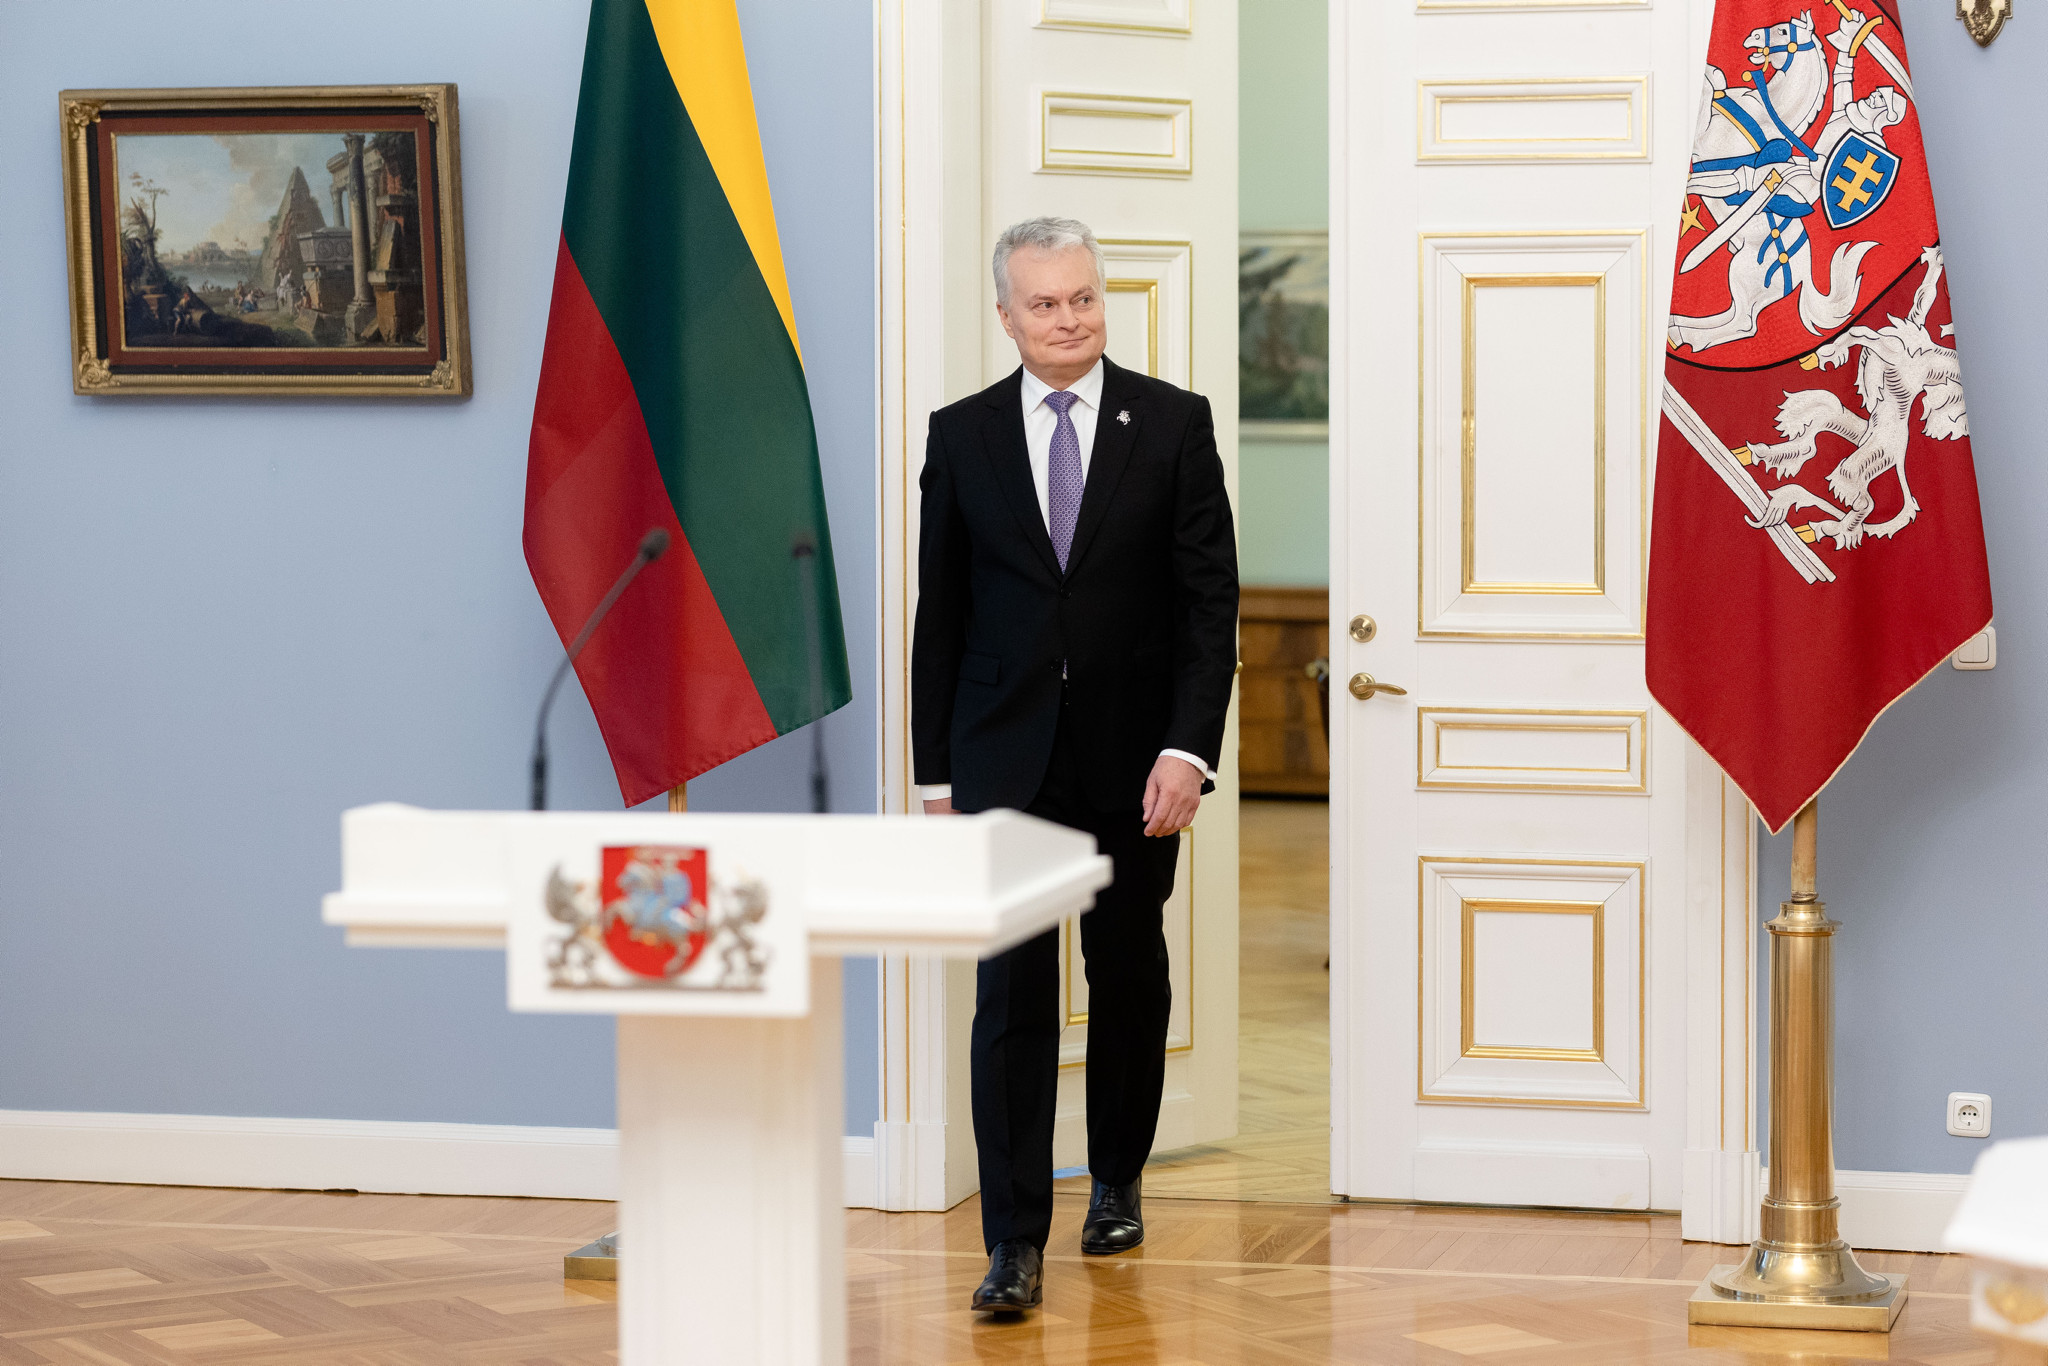 Сообщение Президента о решении баллотироваться на второй срок, обелиск к столетию полиции Литвы, раздача еловых веток и другие новости